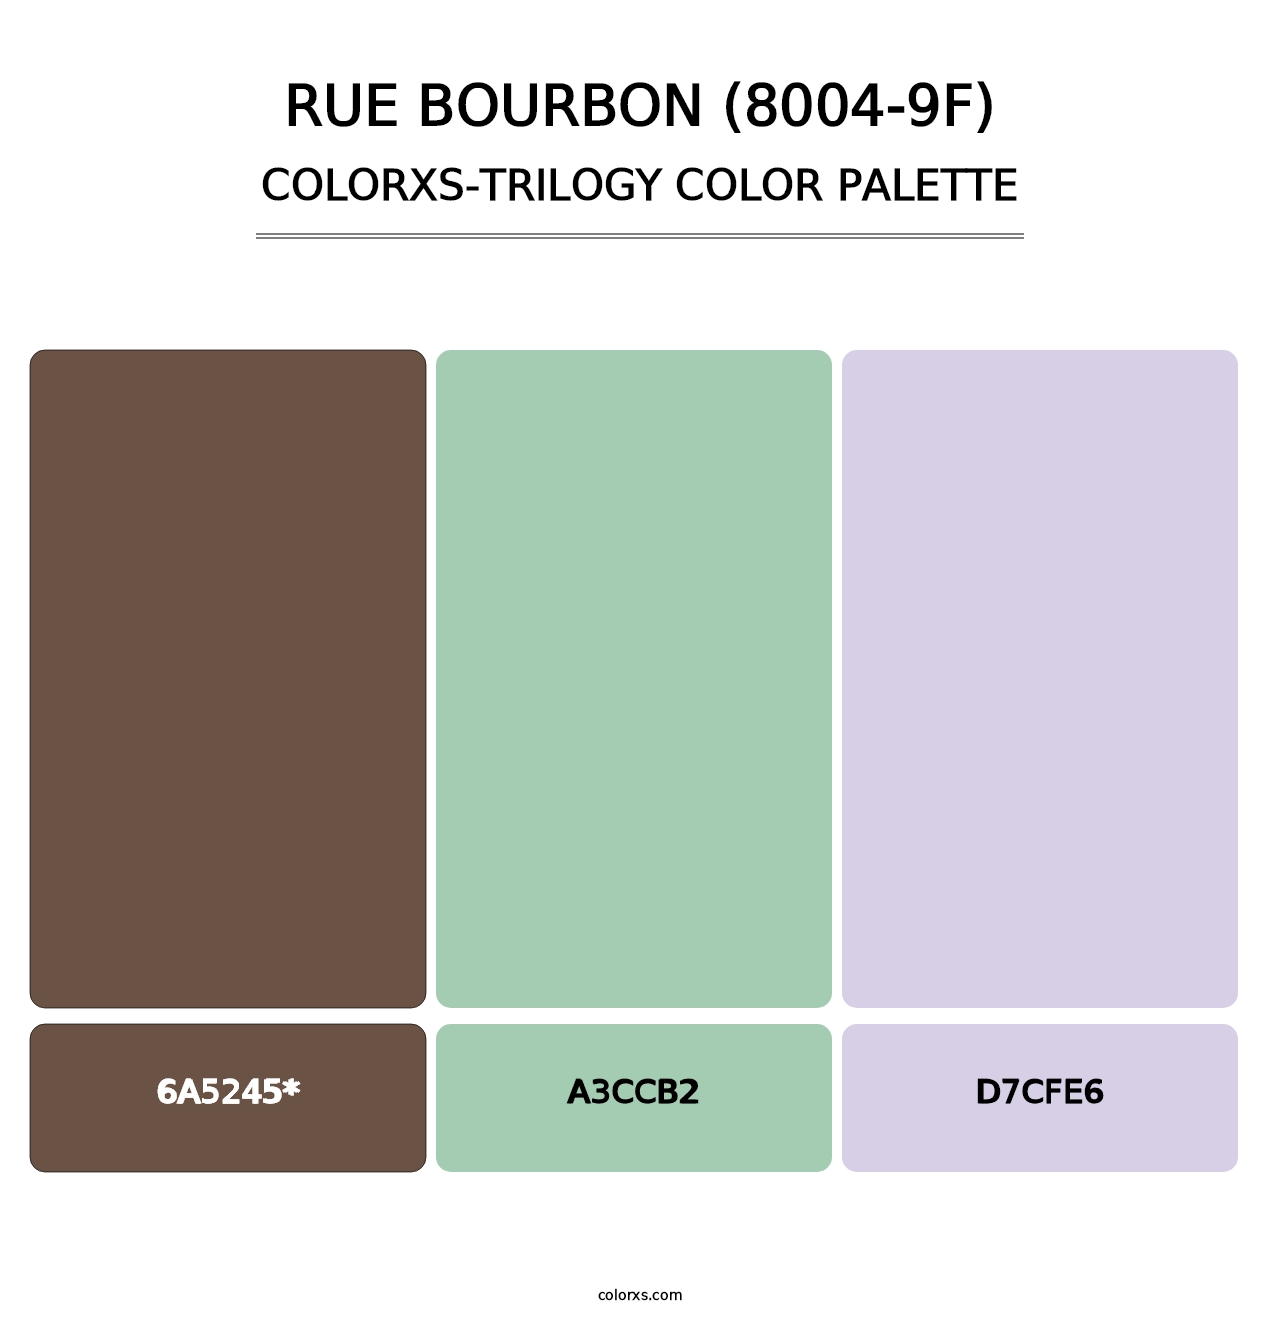 Rue Bourbon (8004-9F) - Colorxs Trilogy Palette